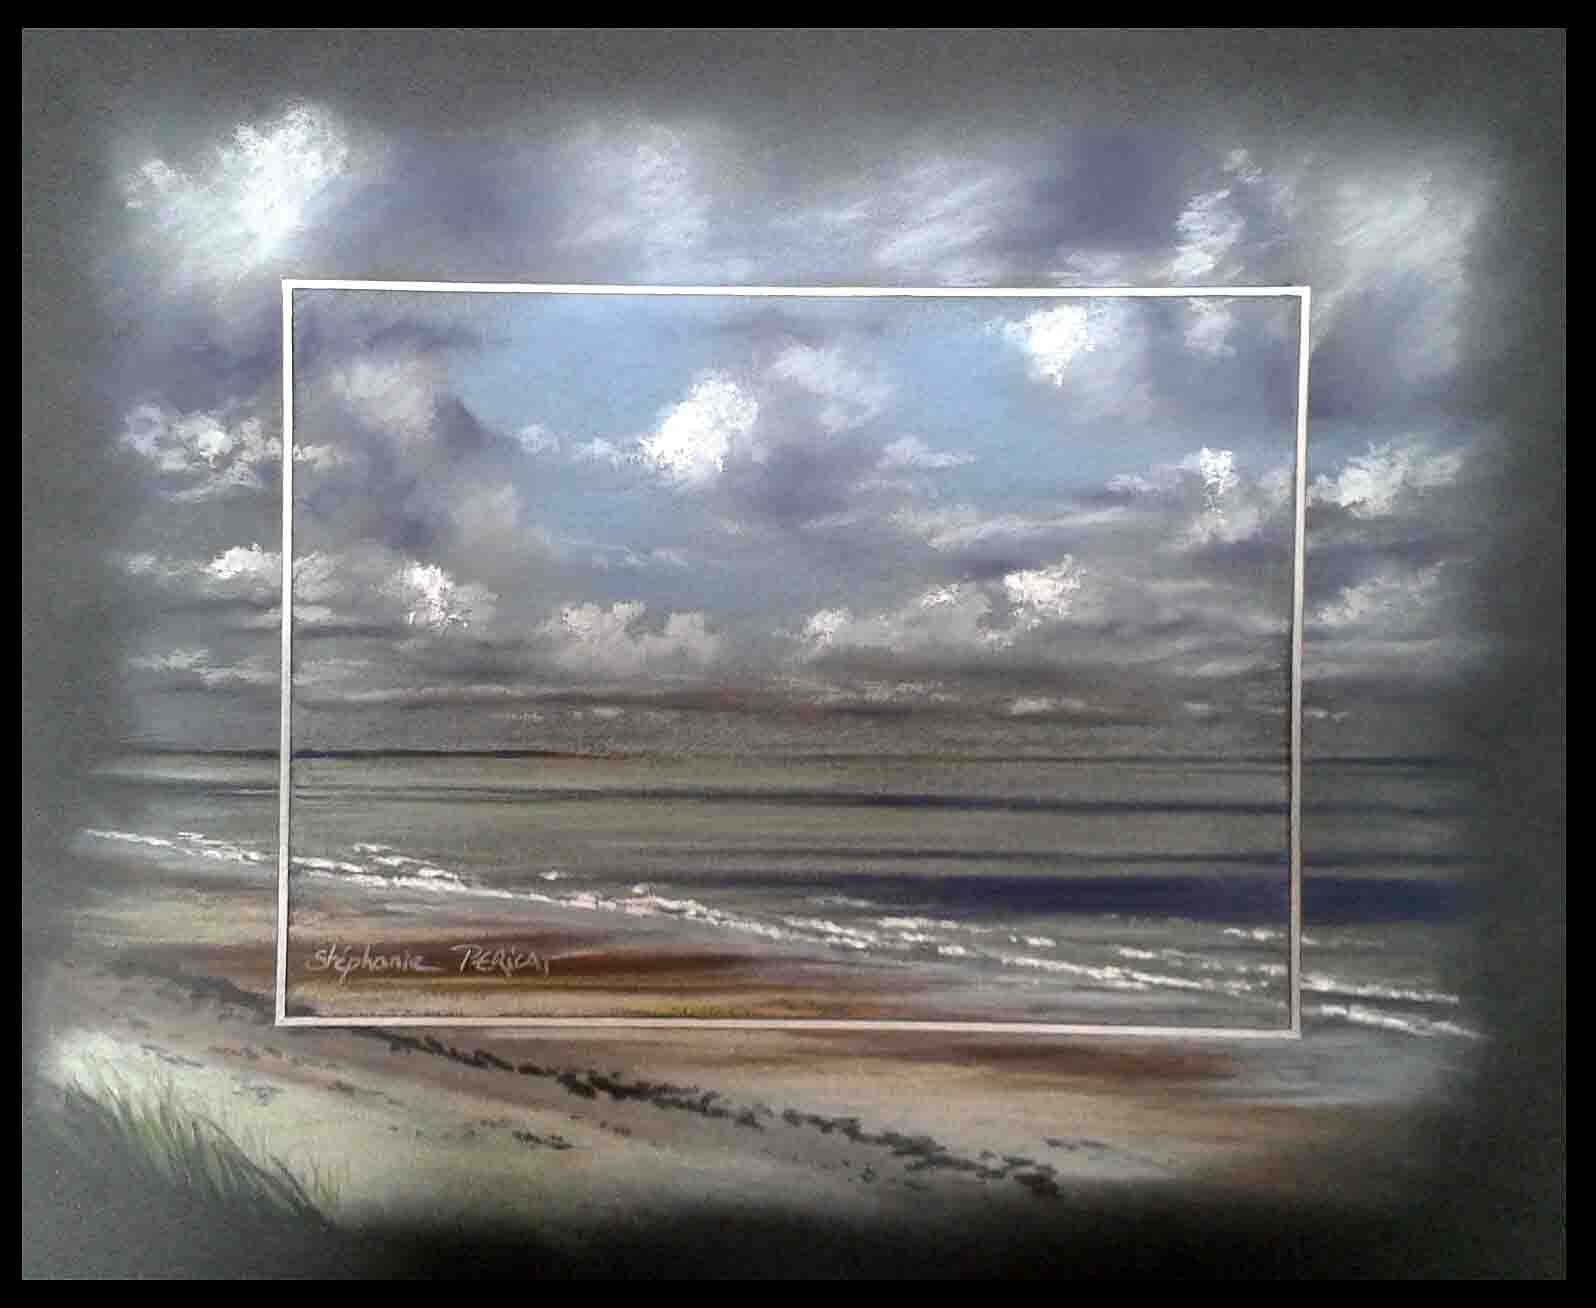 CREANCES PLAGE (creances beach) -- 24x30cm